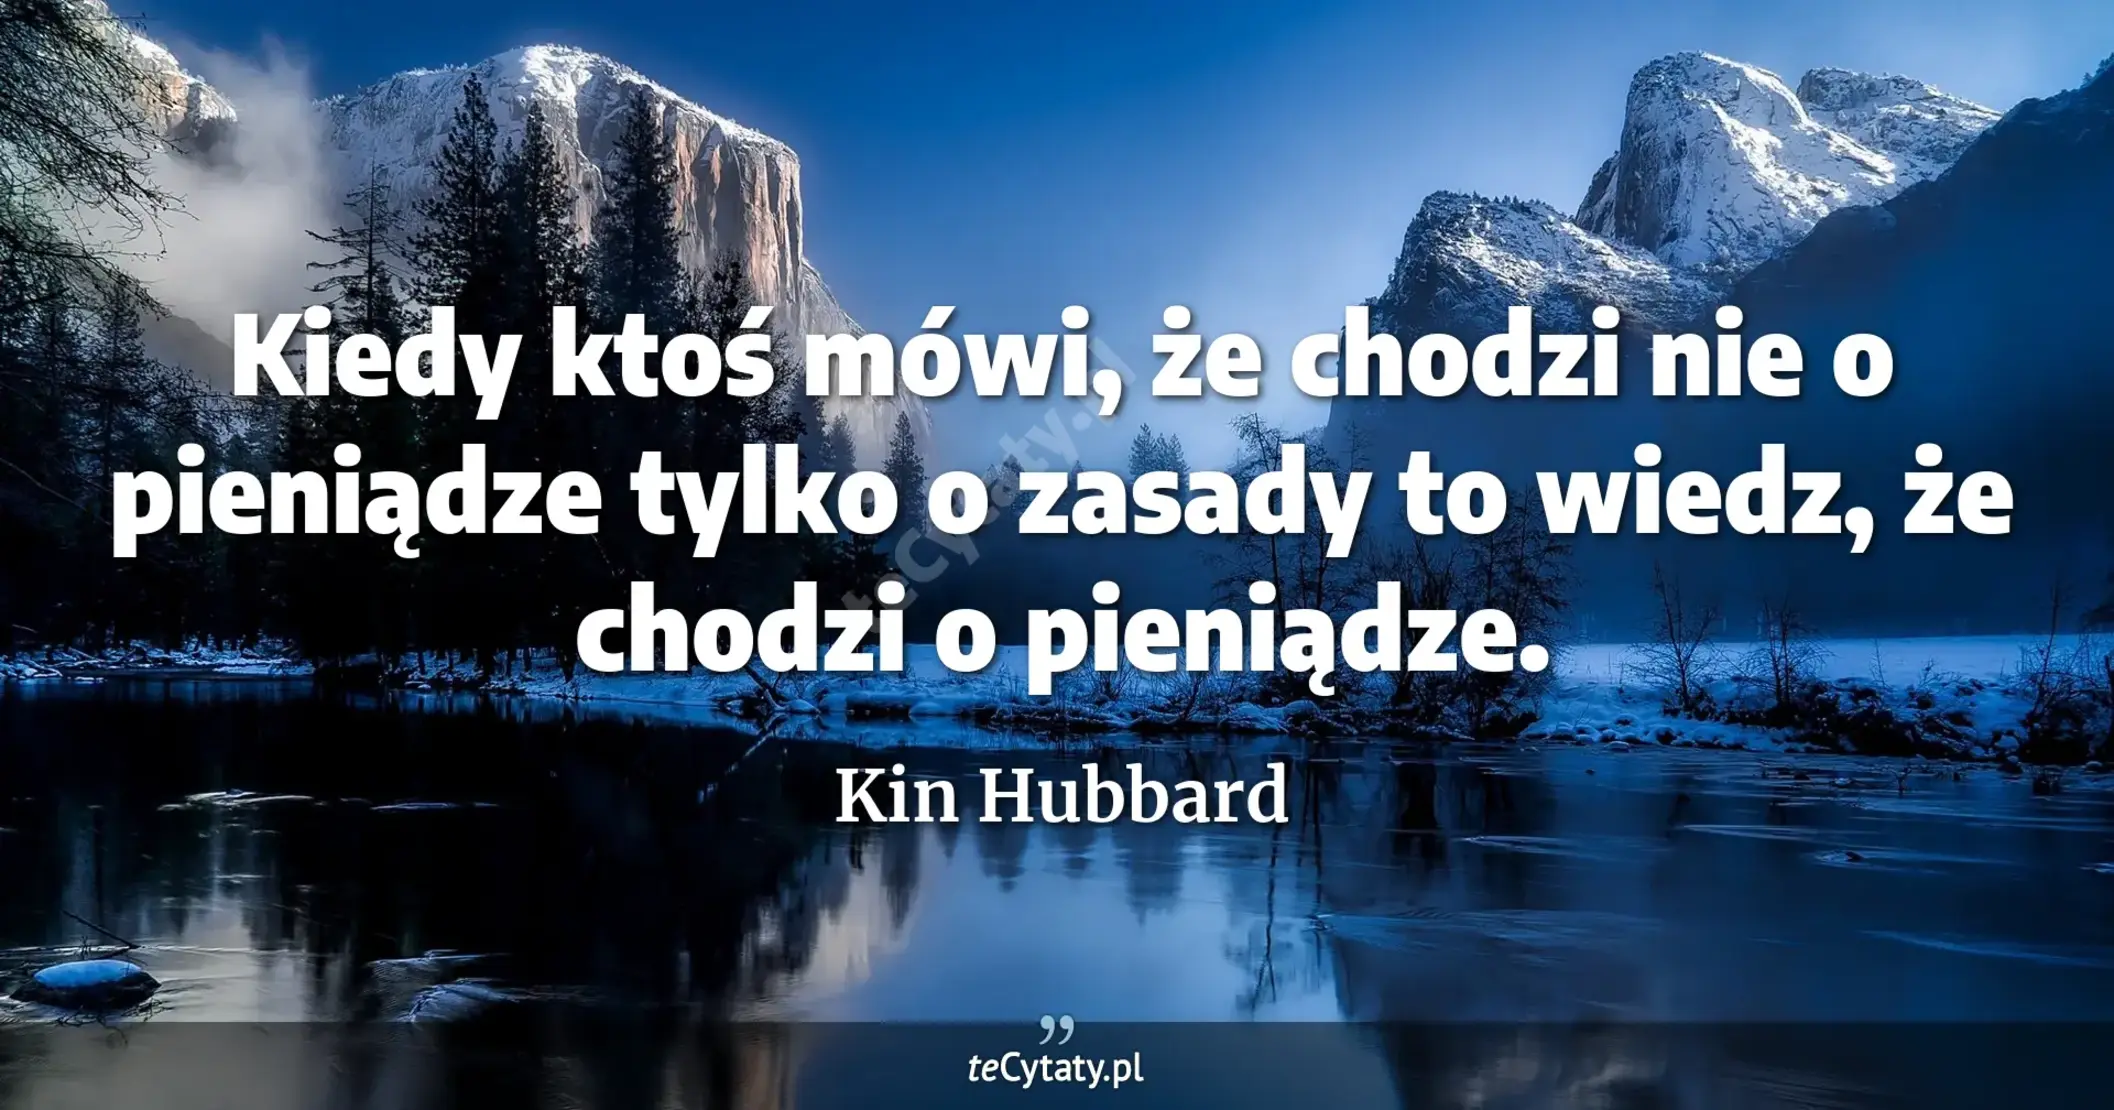 Kiedy ktoś mówi, że chodzi nie o pieniądze tylko o zasady to wiedz, że chodzi o pieniądze. - Kin Hubbard